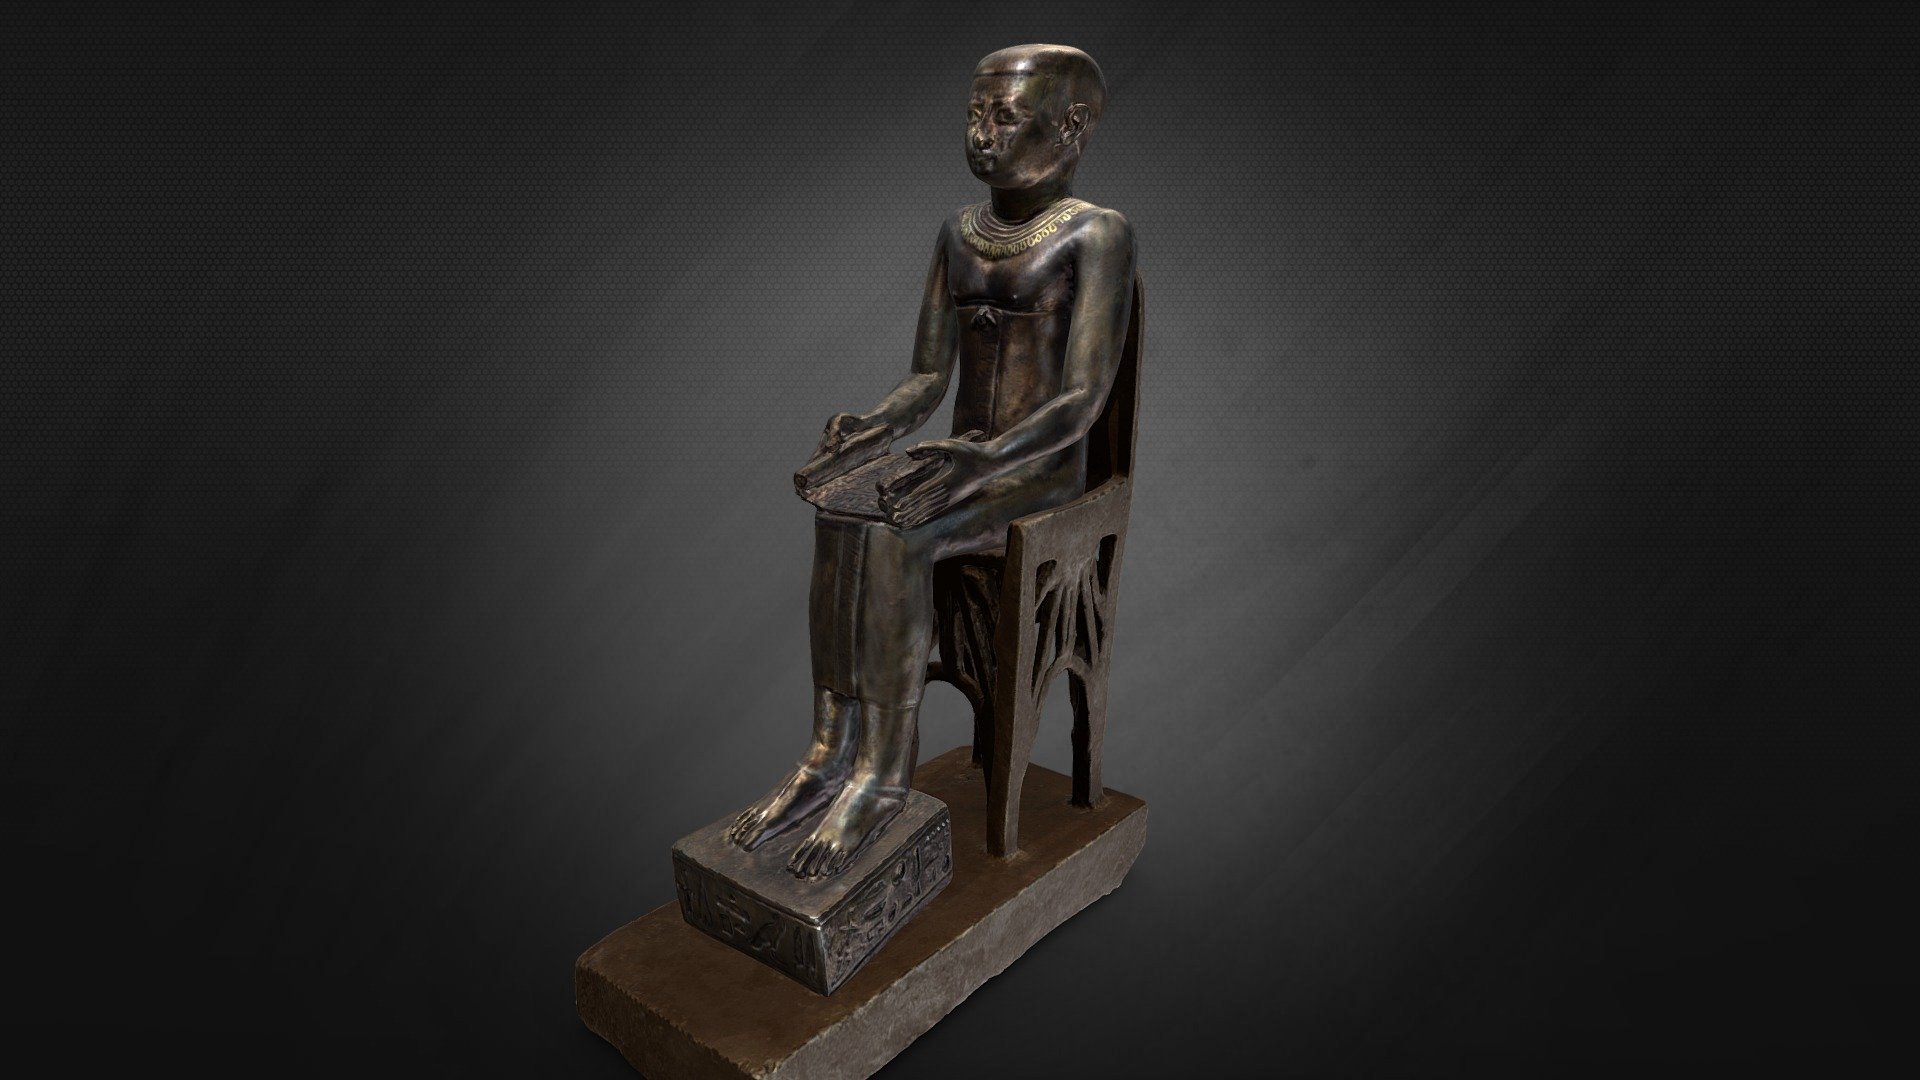 Imhotep bronzszobra 



Készítés ideje: Kr. e. 7. század közepe körül

Anyag, technika: bronz, arany, ezüst és elektrum berakásokkal

Méret: magasság: 17,6 cm, szék: magasság: 15,6 cm

Leltári szám: 51.2313

Gyűjtemény: Egyiptomi Gyűjtemény, Szépművészeti Múzeum (KDS)

Licenc: ©Szépművészeti Múzeum, Budapest 



További információért keresse fel az alábbi linket:

https://www.szepmuveszeti.hu/mutargyak/imhotep-bronzszobra/




Votive statue of Imhotep



Date: ca. mid-7th century B.C.

Medium, technique: bronze, with gold, silver and electrum inlays

Dimensions: height: 17.6 cm, chair: height: 15.6 cm

Inventory number: 51.2313

Collection: Department of Egyptian Antiquities, The Museum of Fine Arts, Budapest 

License: ©Museum of Fine Arts, Budapest



For more information, go to the Museum’s site linked below:

https://www.mfab.hu/artworks/votive-statue-of-imhotep/ - Imhotep bronzszobra - 3D model by Museum of Fine Arts, Budapest (@mfab) 3d model